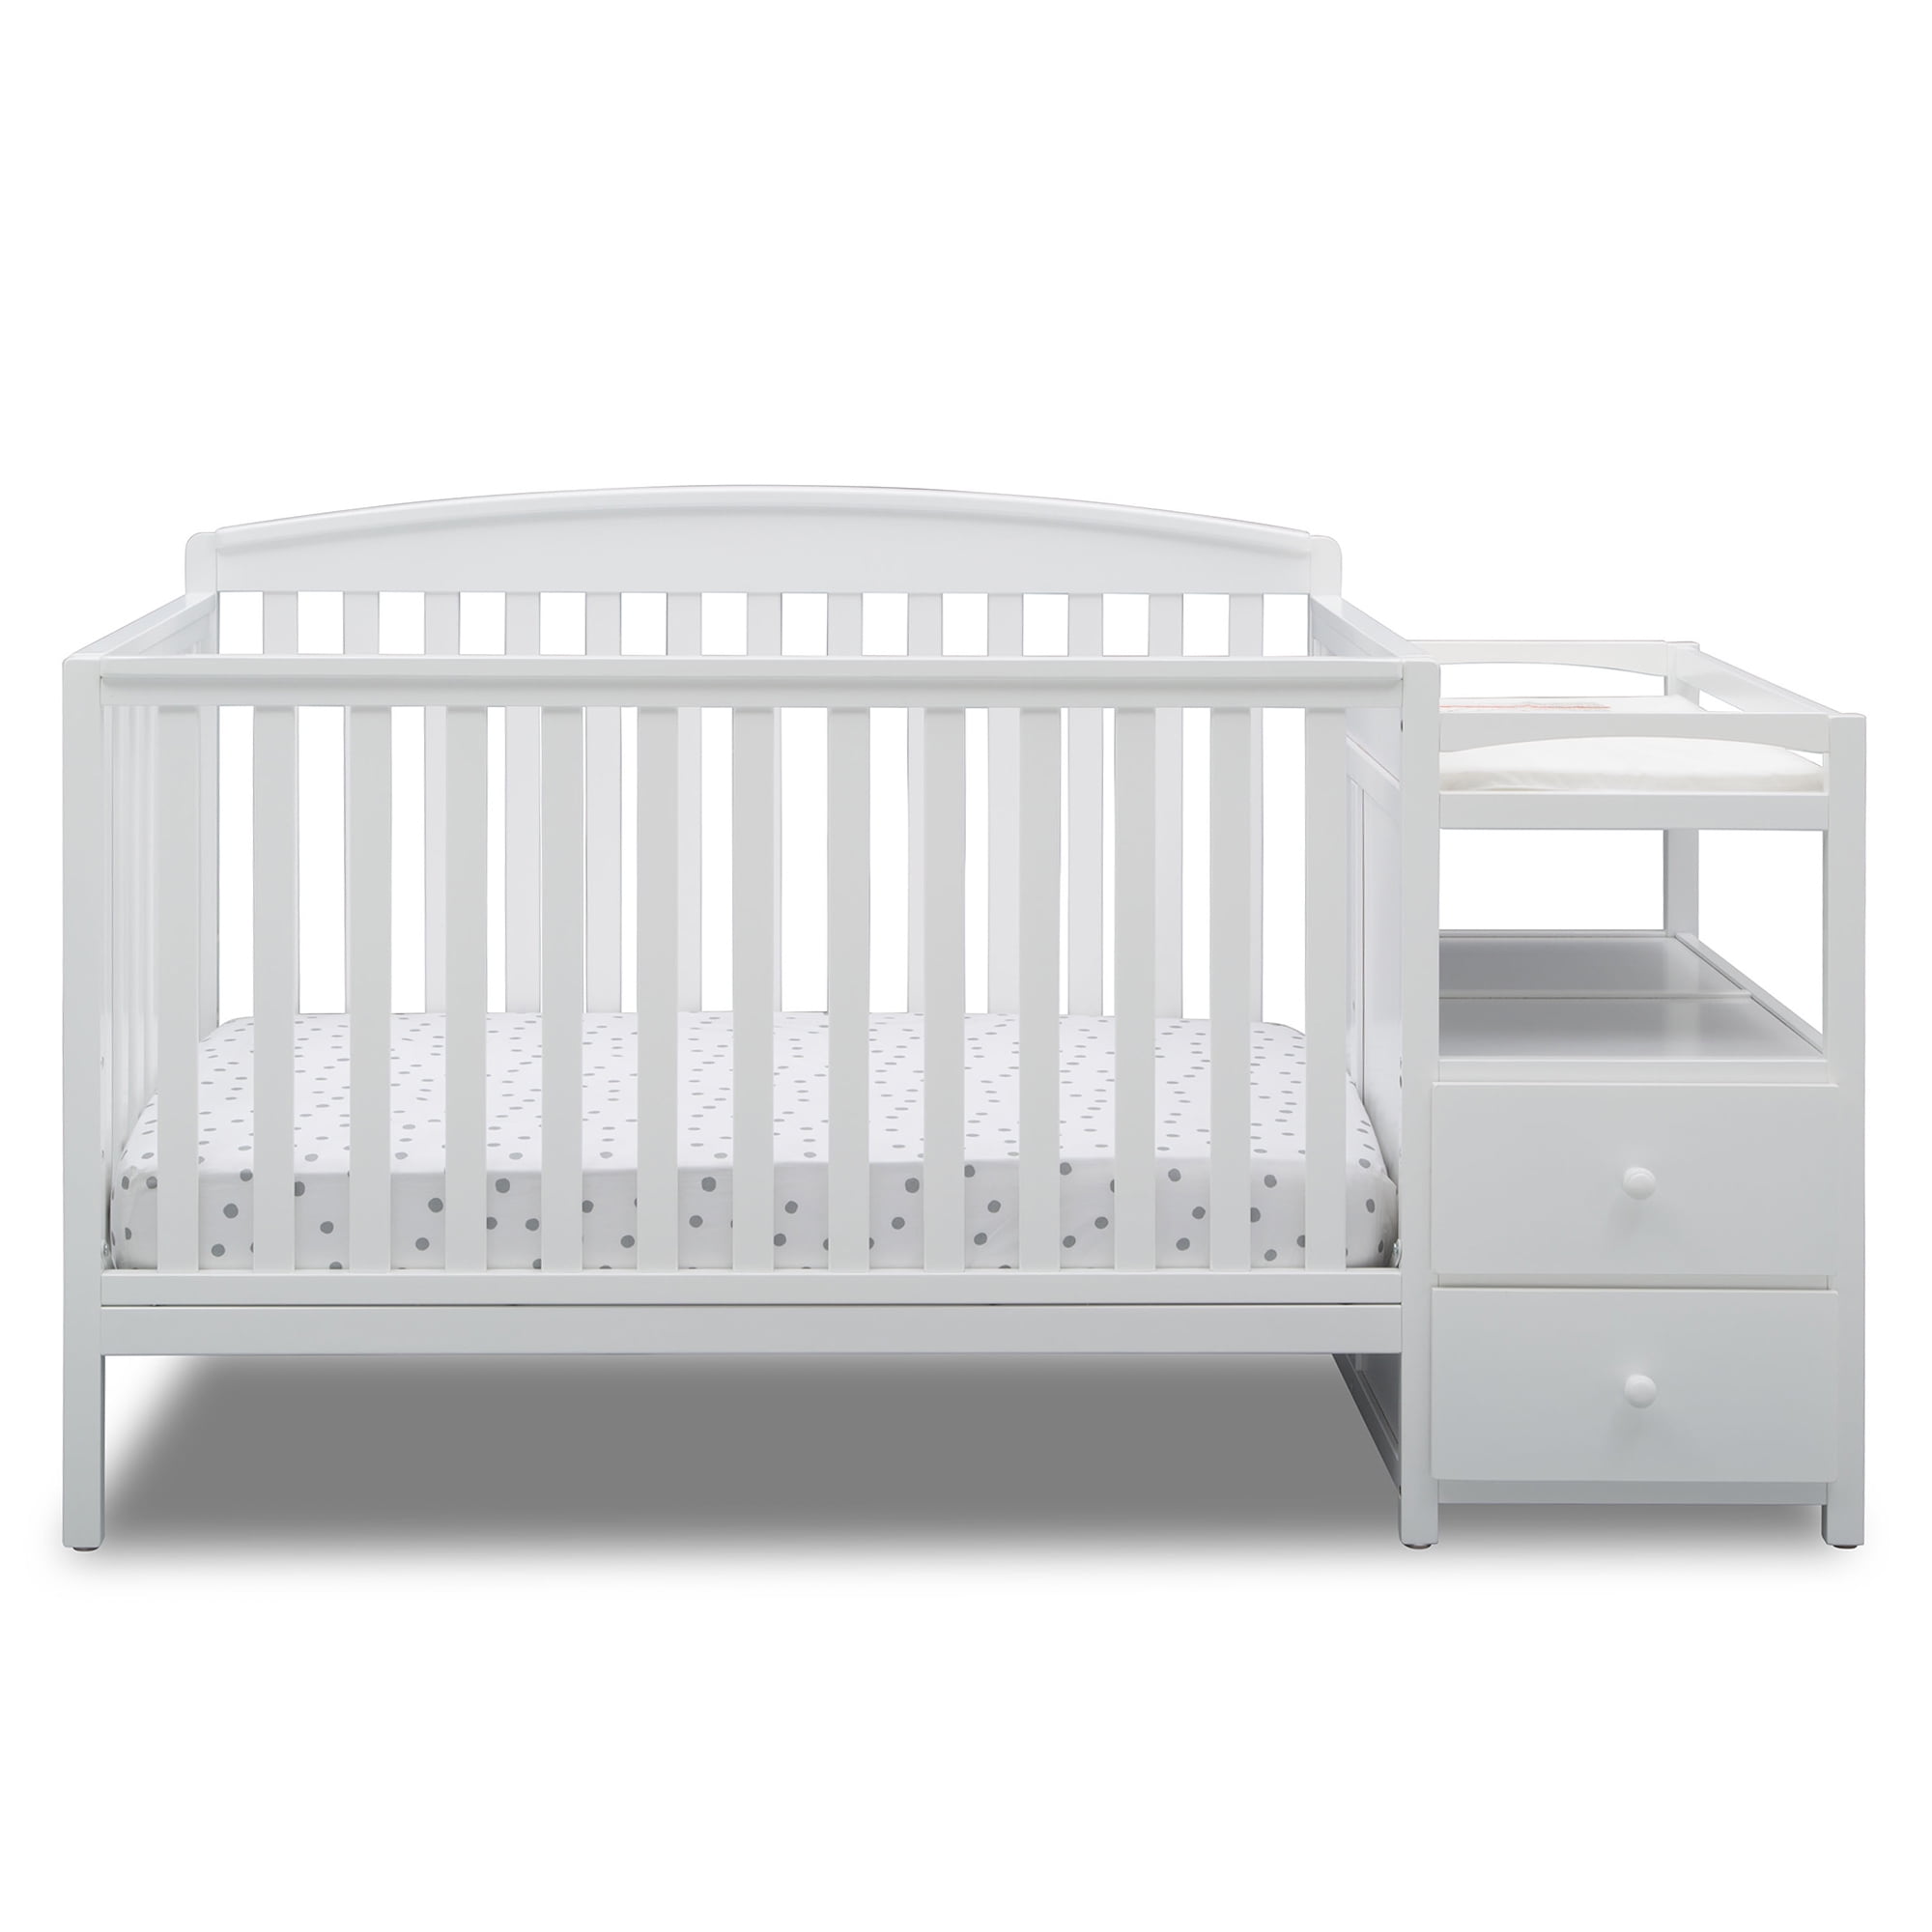 morgen haspel bedriegen Delta Children Royal 4-in-1 Baby Crib & Changer, White - Walmart.com